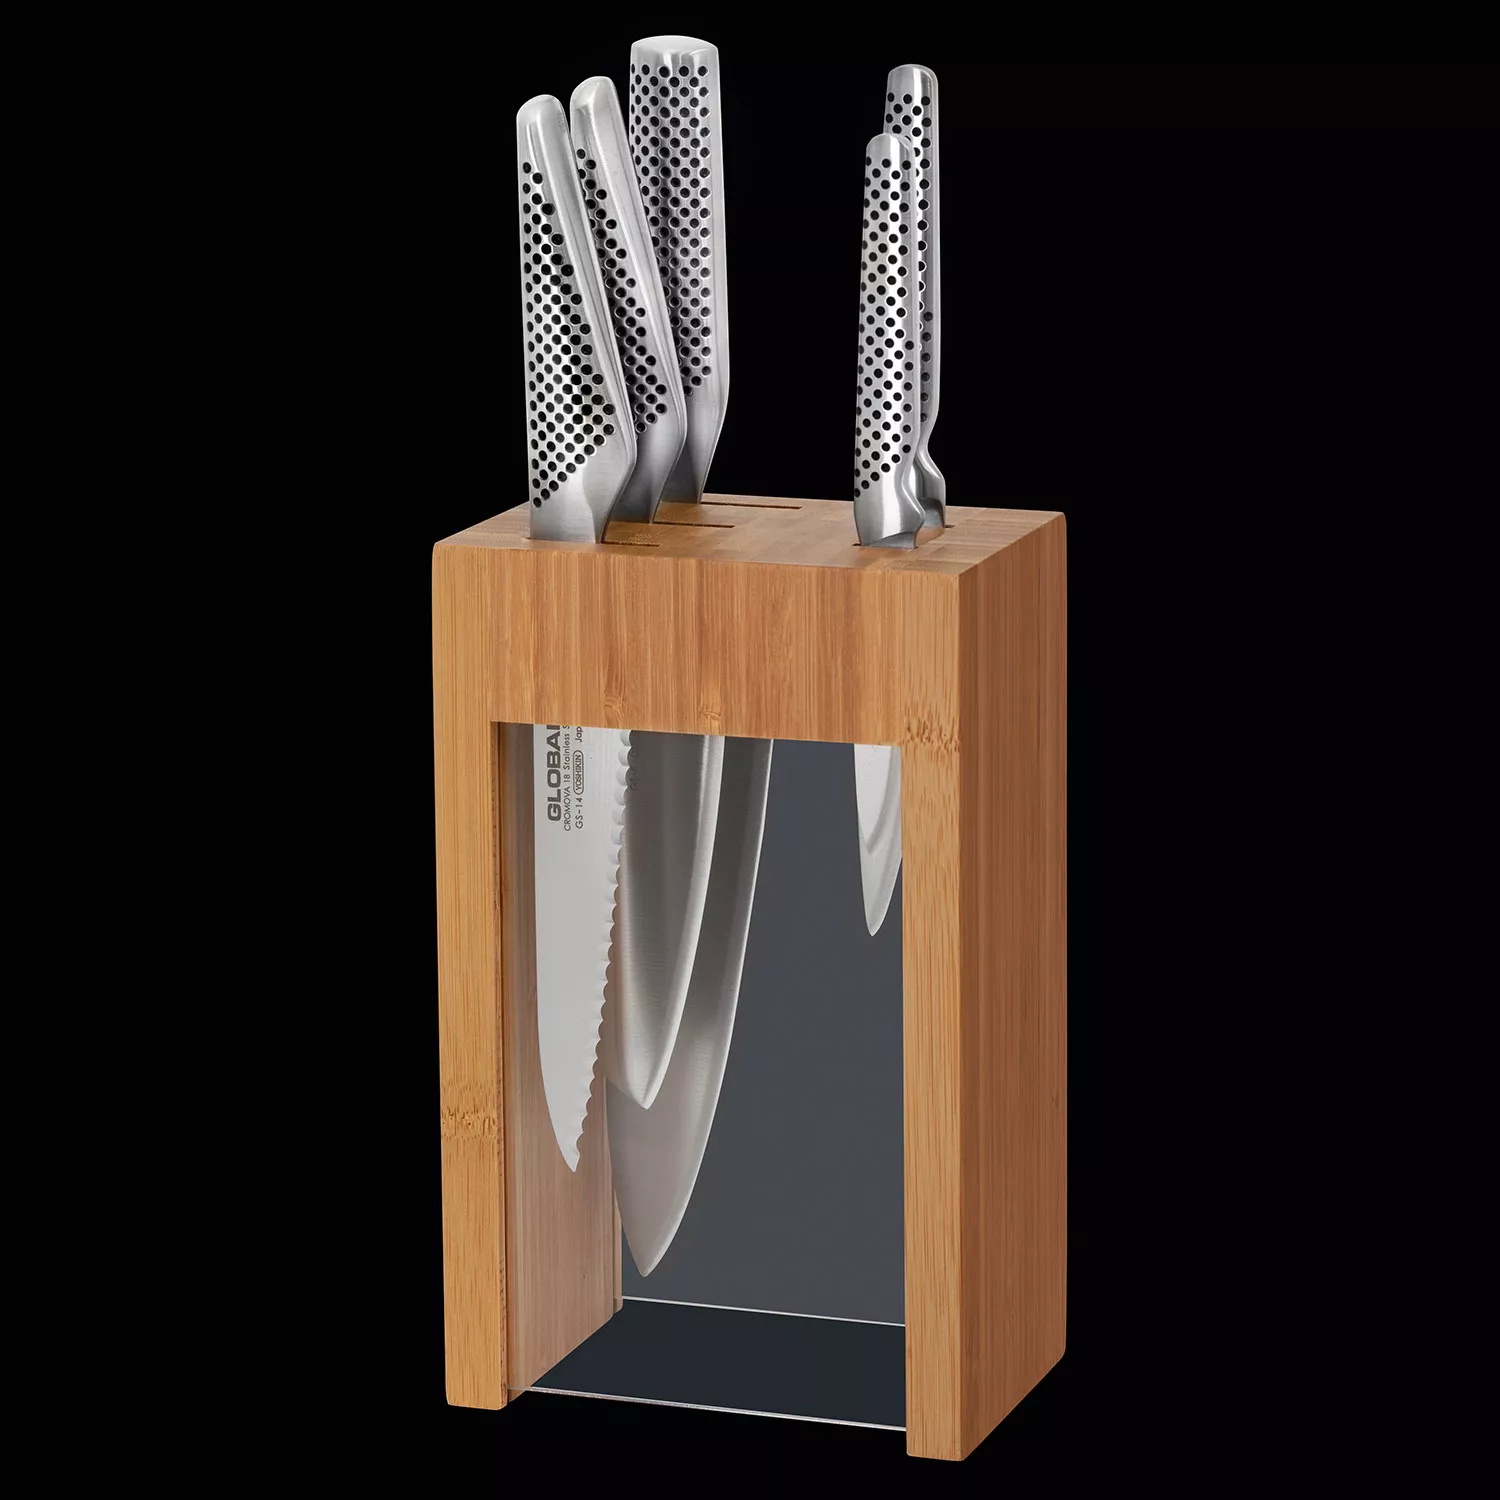 Sur La Table Classic 6-Piece Knife Block Set